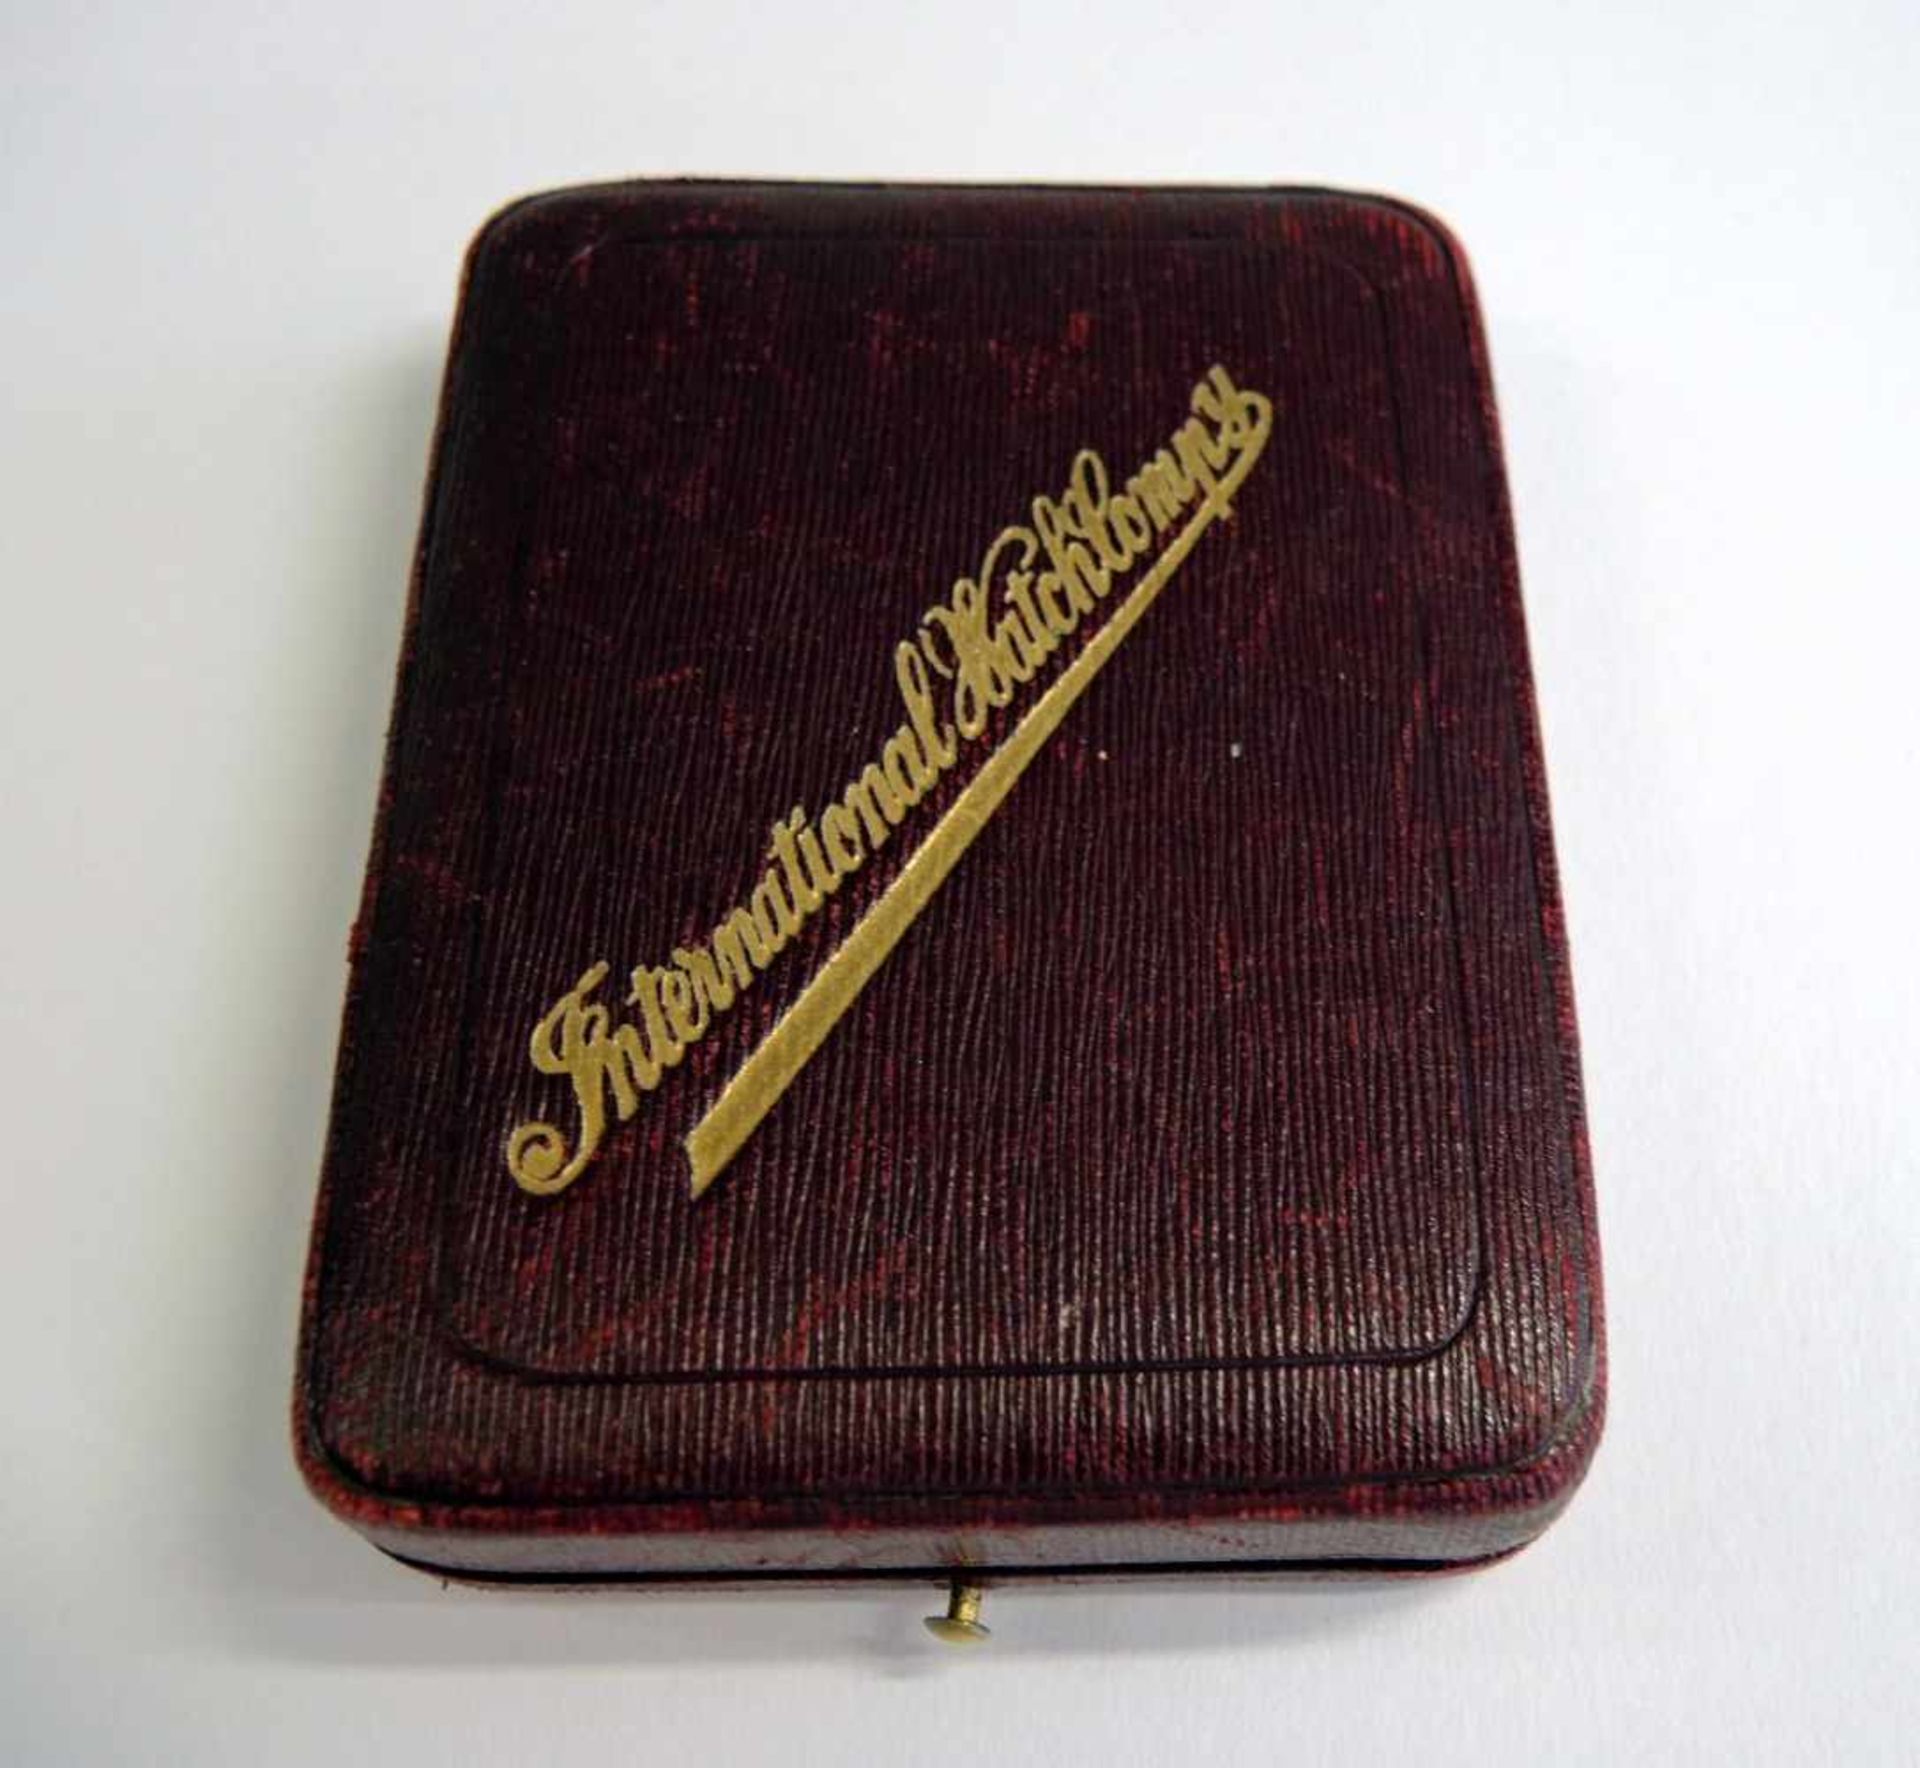 IWC, Savonette-Taschenuhr14 K. Gelbgold, in Original-Box, mit Papieren. Gut erhalten, gangbar. Ø ca. - Bild 5 aus 5